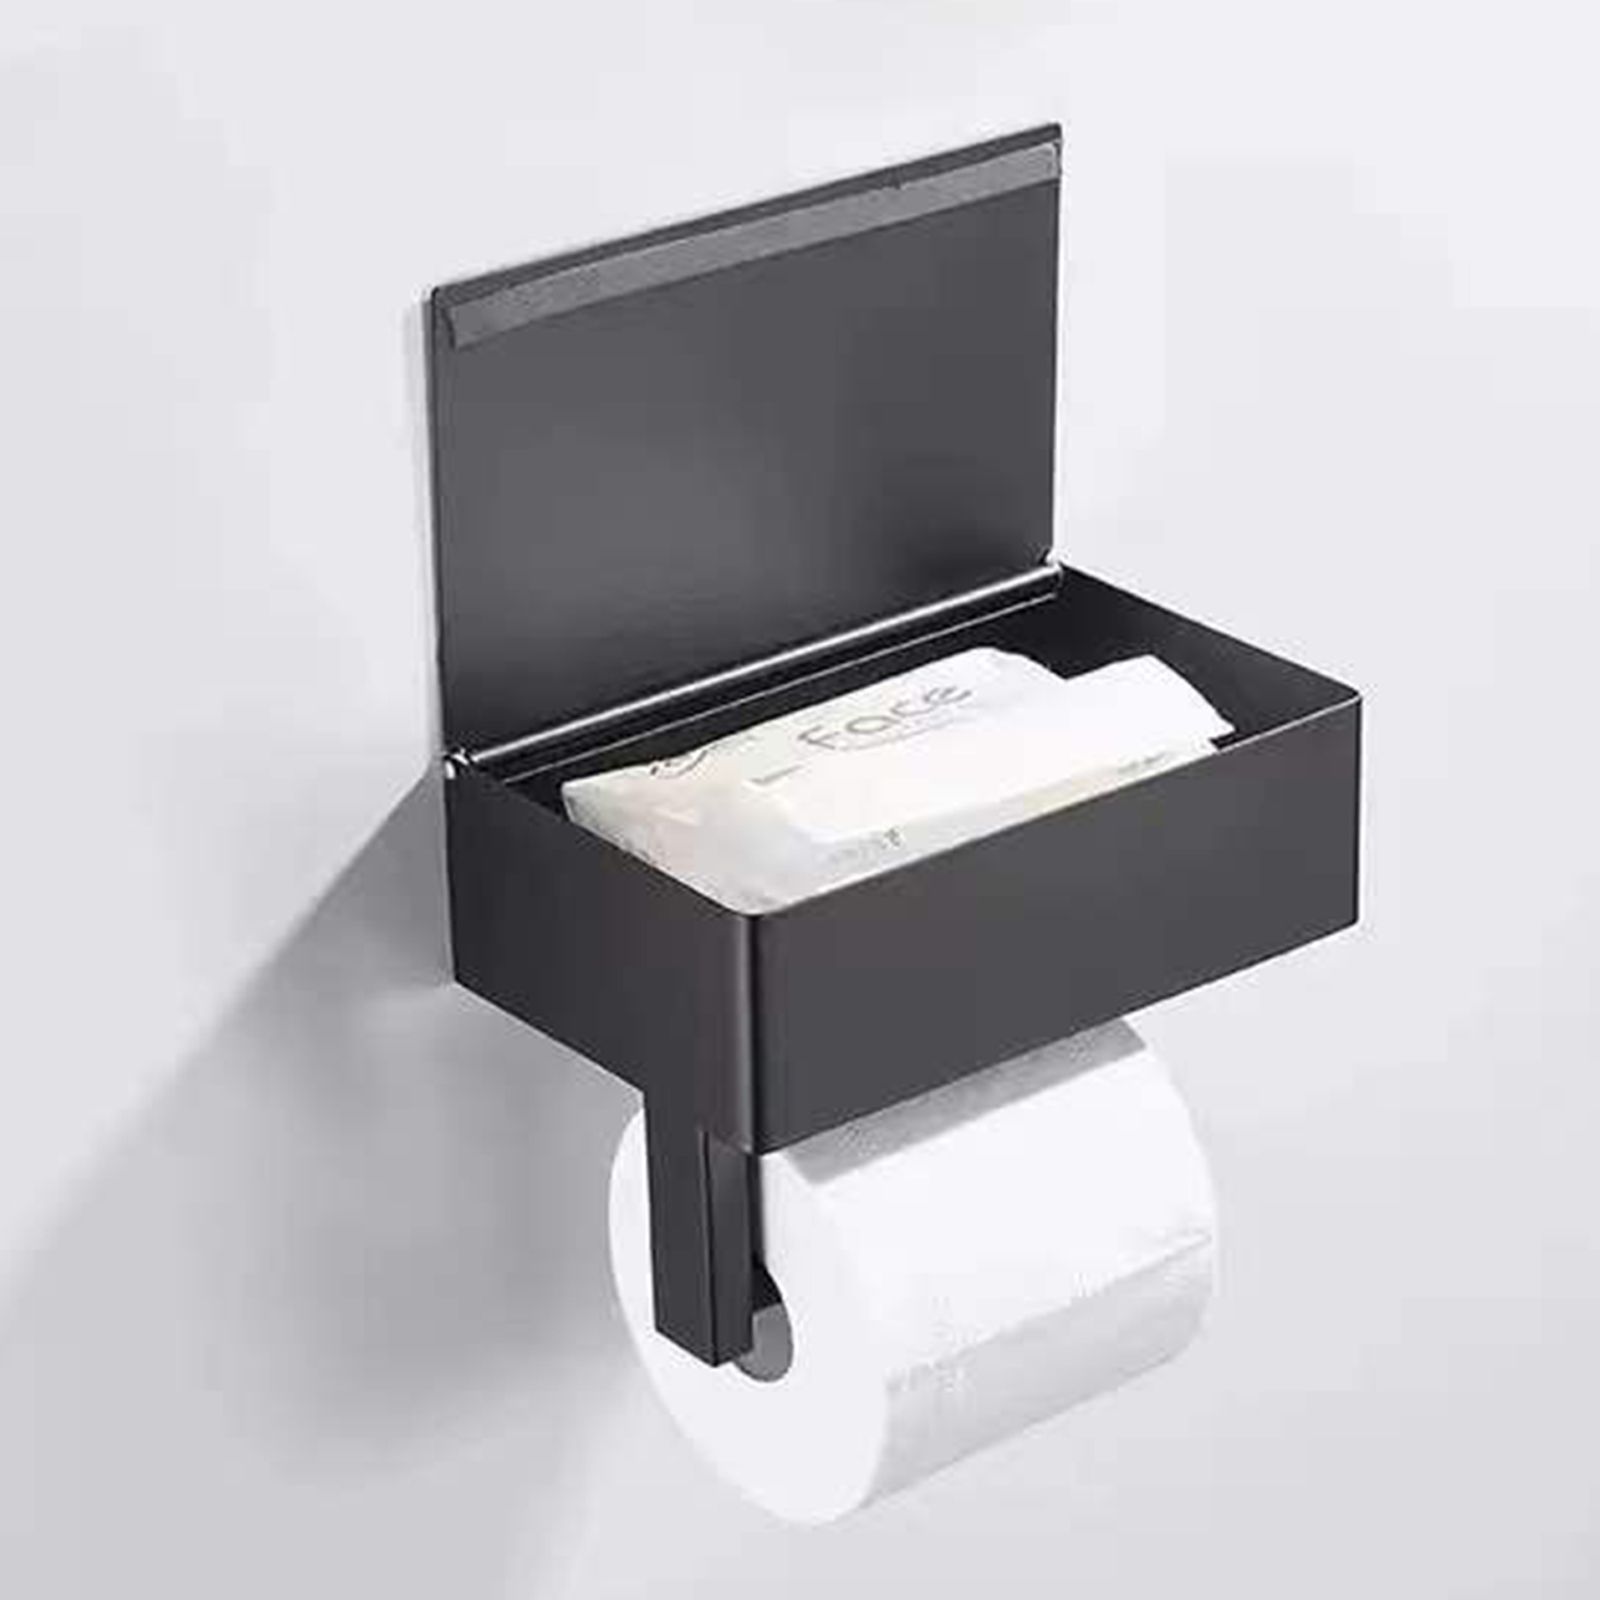 Почему мы производим качественную туалетную бумагу?